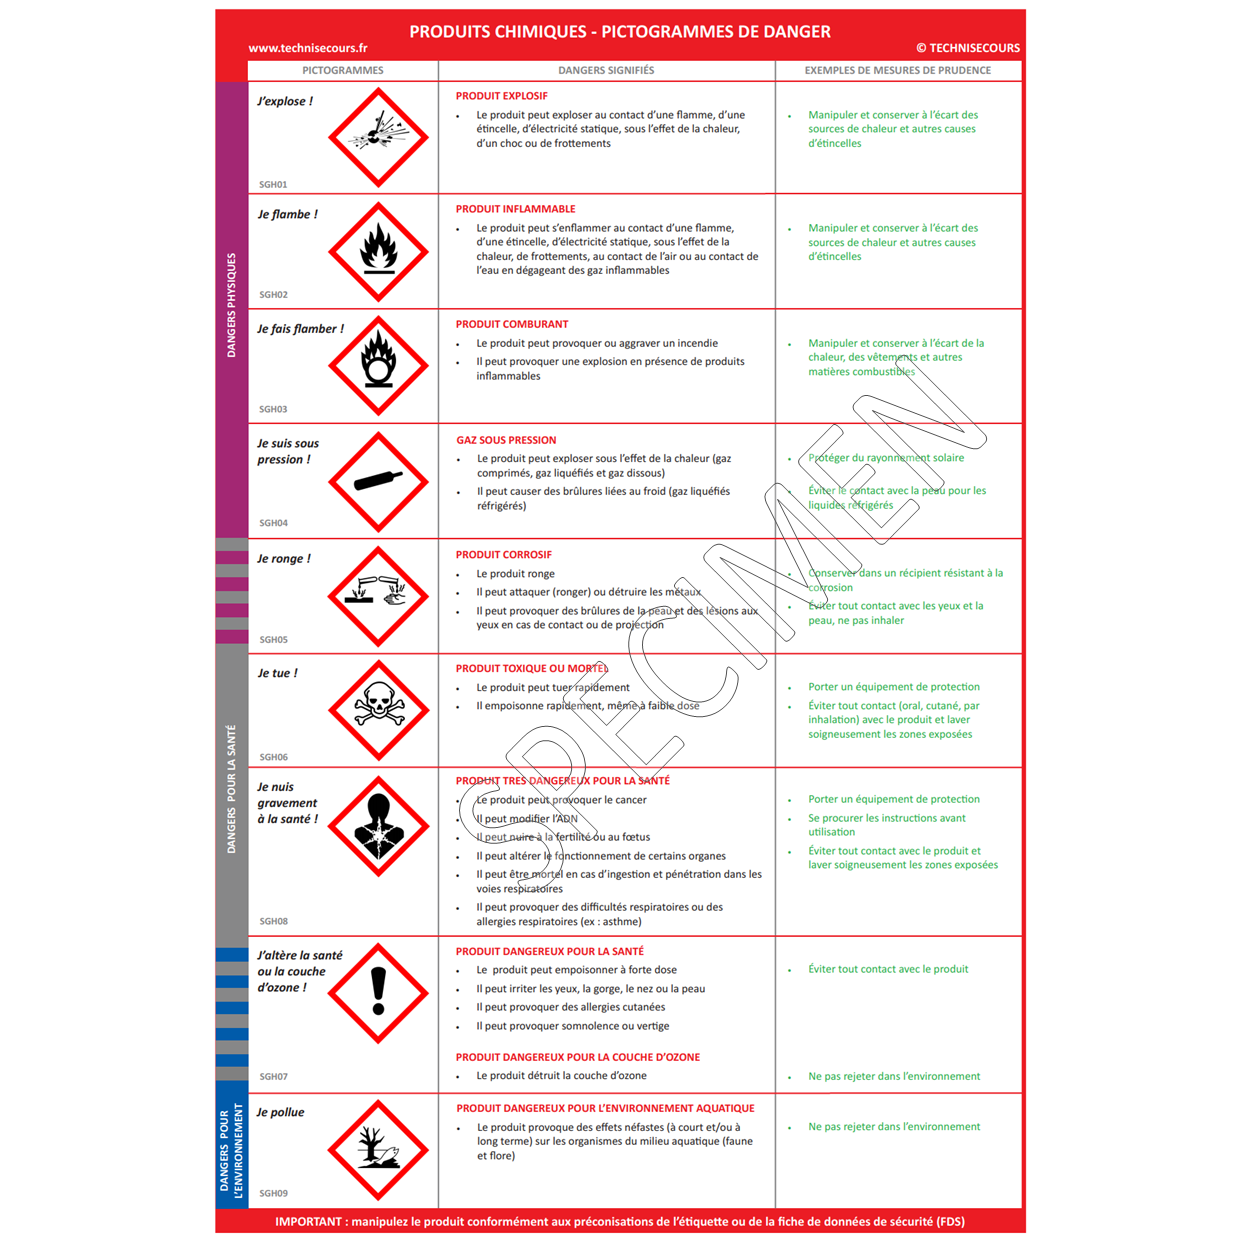 Panneau affichage symboles danger sgh produits chimiques 1